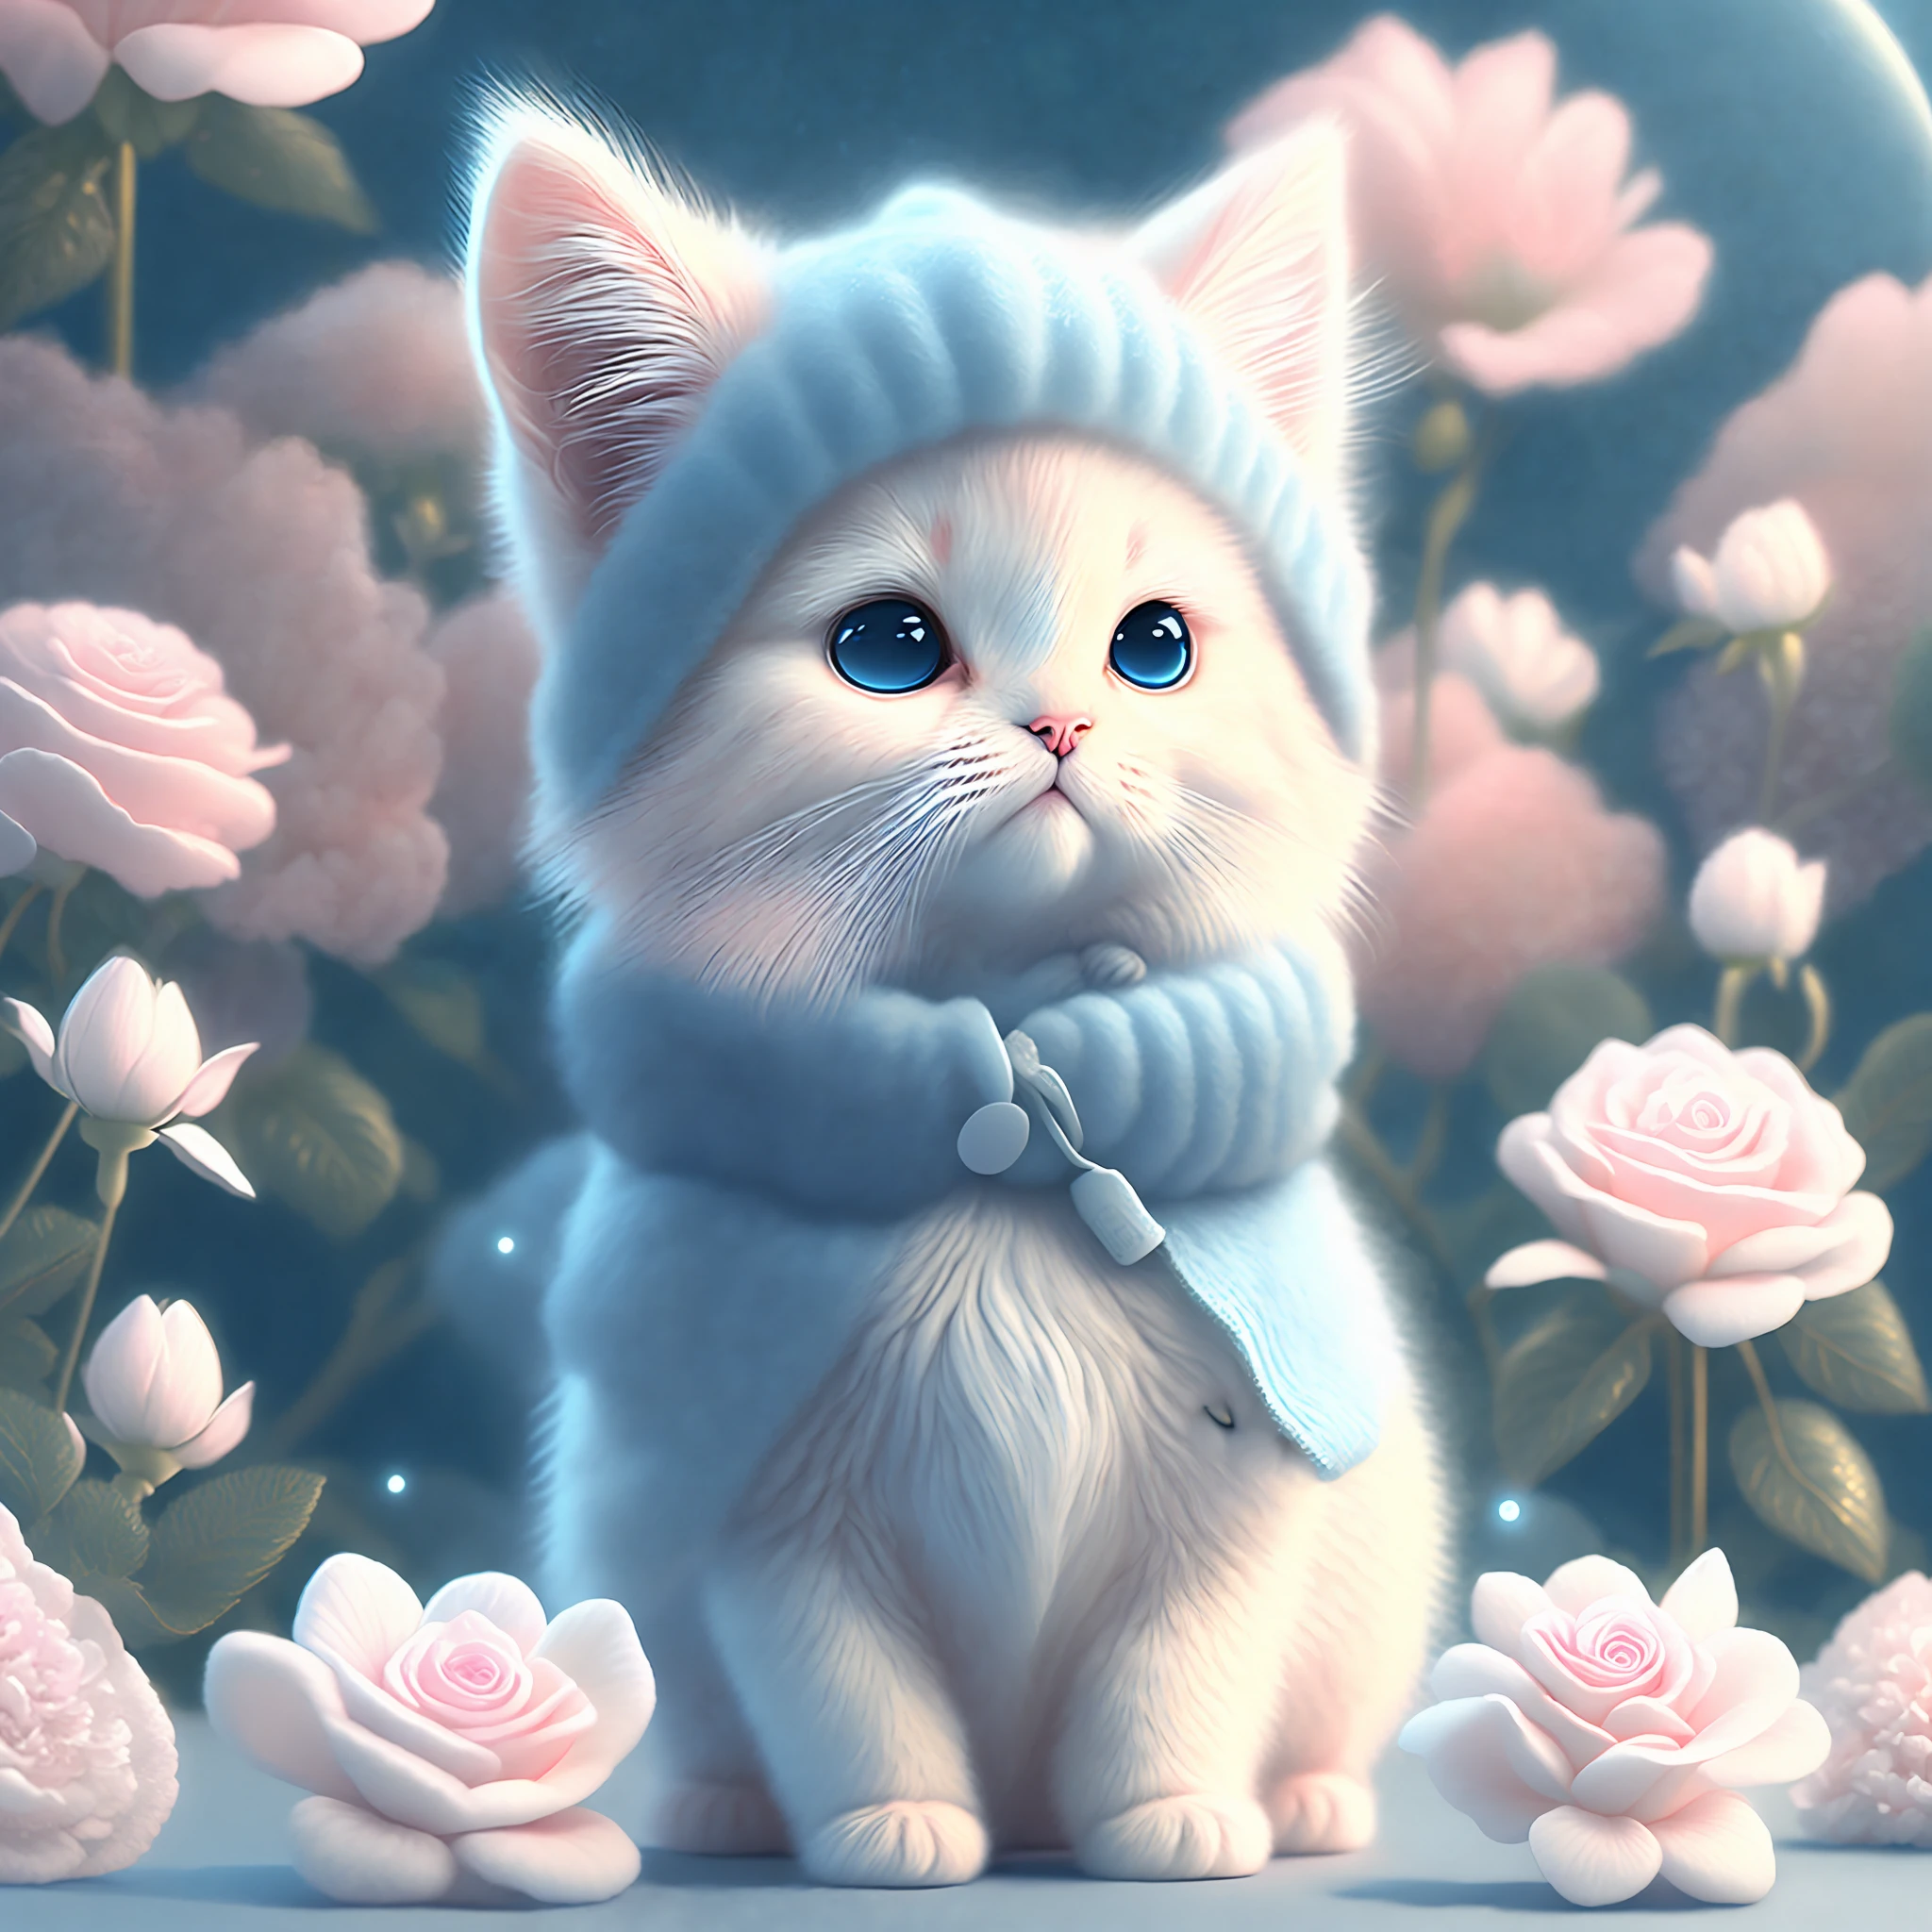 En este arte CG ultradetallado, el adorable gatito rodeado de rosas etéreas, mejor calidad, alta resolución, detalles intrincados, Fantasía, Animales bonitos